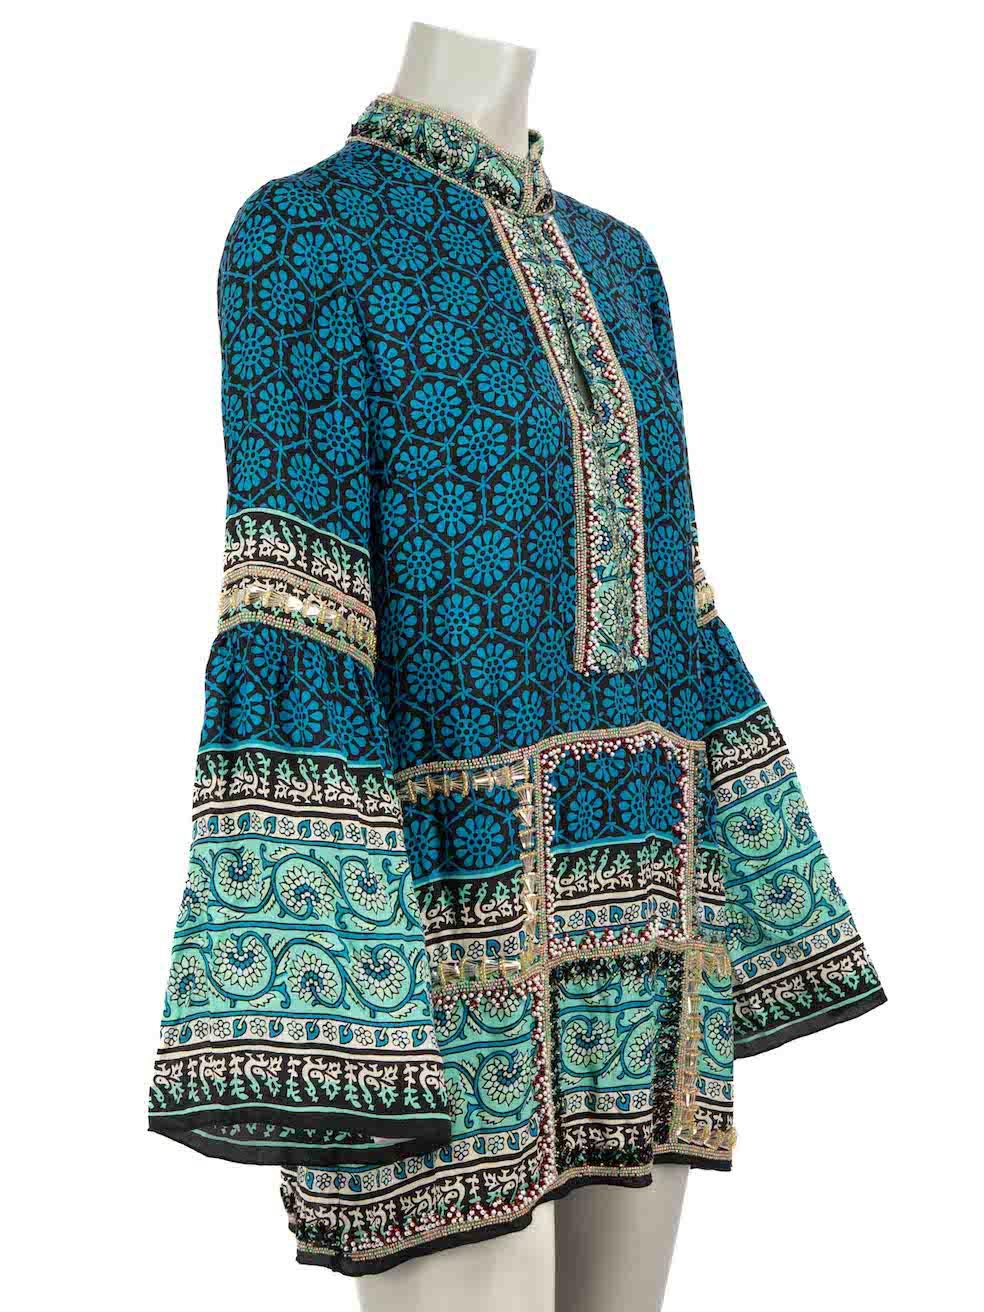 CONDIT ist sehr gut. Kaum sichtbare Abnutzungserscheinungen am Kleid sind bei diesem gebrauchten Anna Sui Designer-Wiederverkaufsartikel zu erkennen.
  
Einzelheiten 
Mehrfarbig 
Seide 
Tunika-Oberteil 
Ethnisch-orientalisches Muster 
V-Ausschnitt